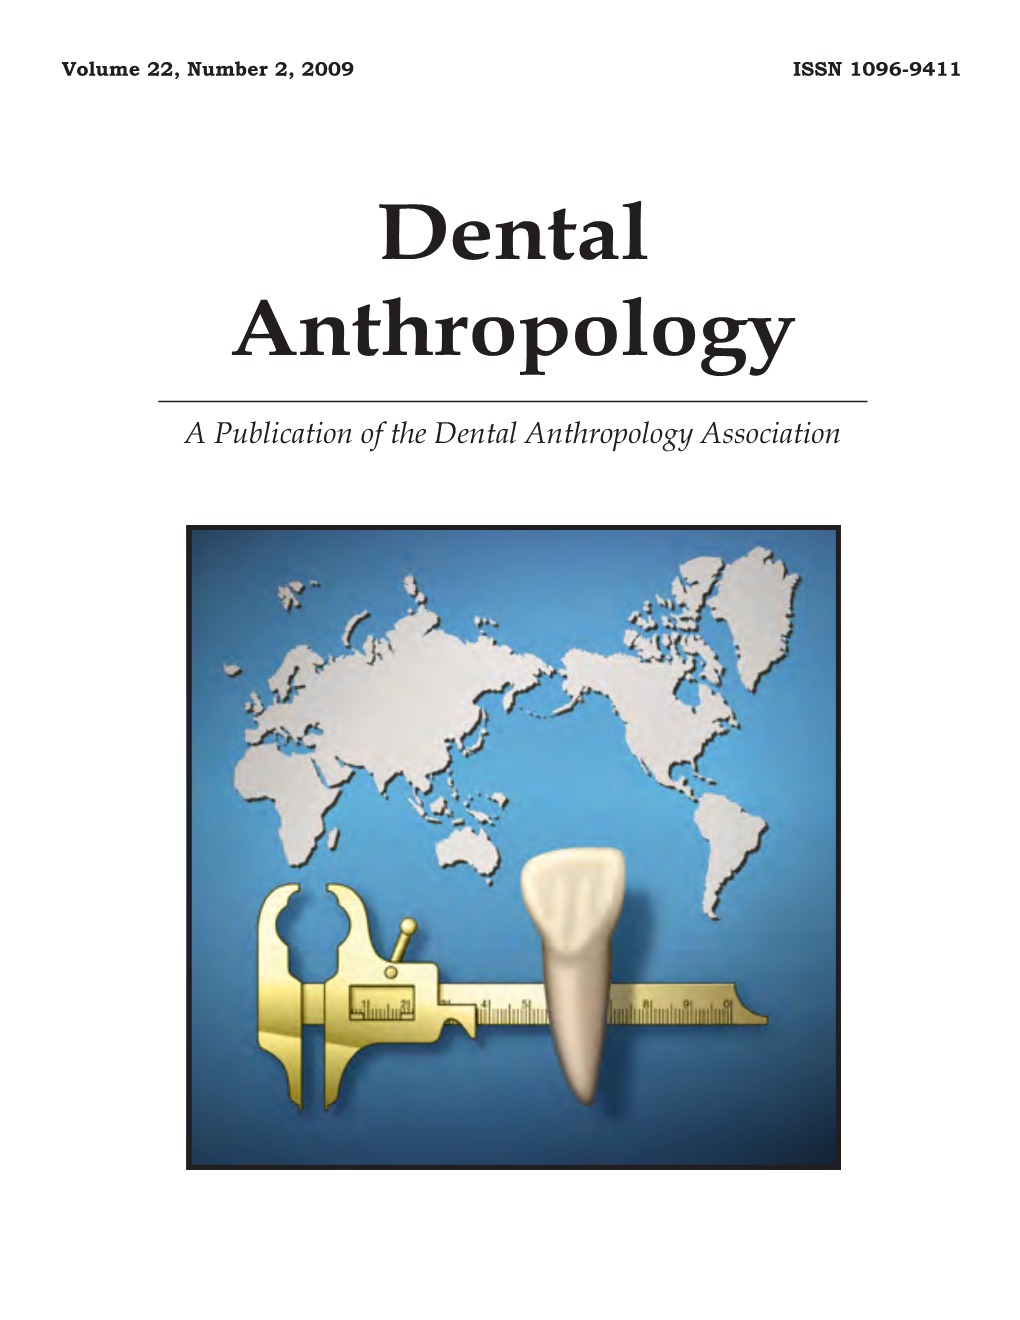 Dental Anthropology Association Dental Anthropology Volume 22, Number 2, 2009